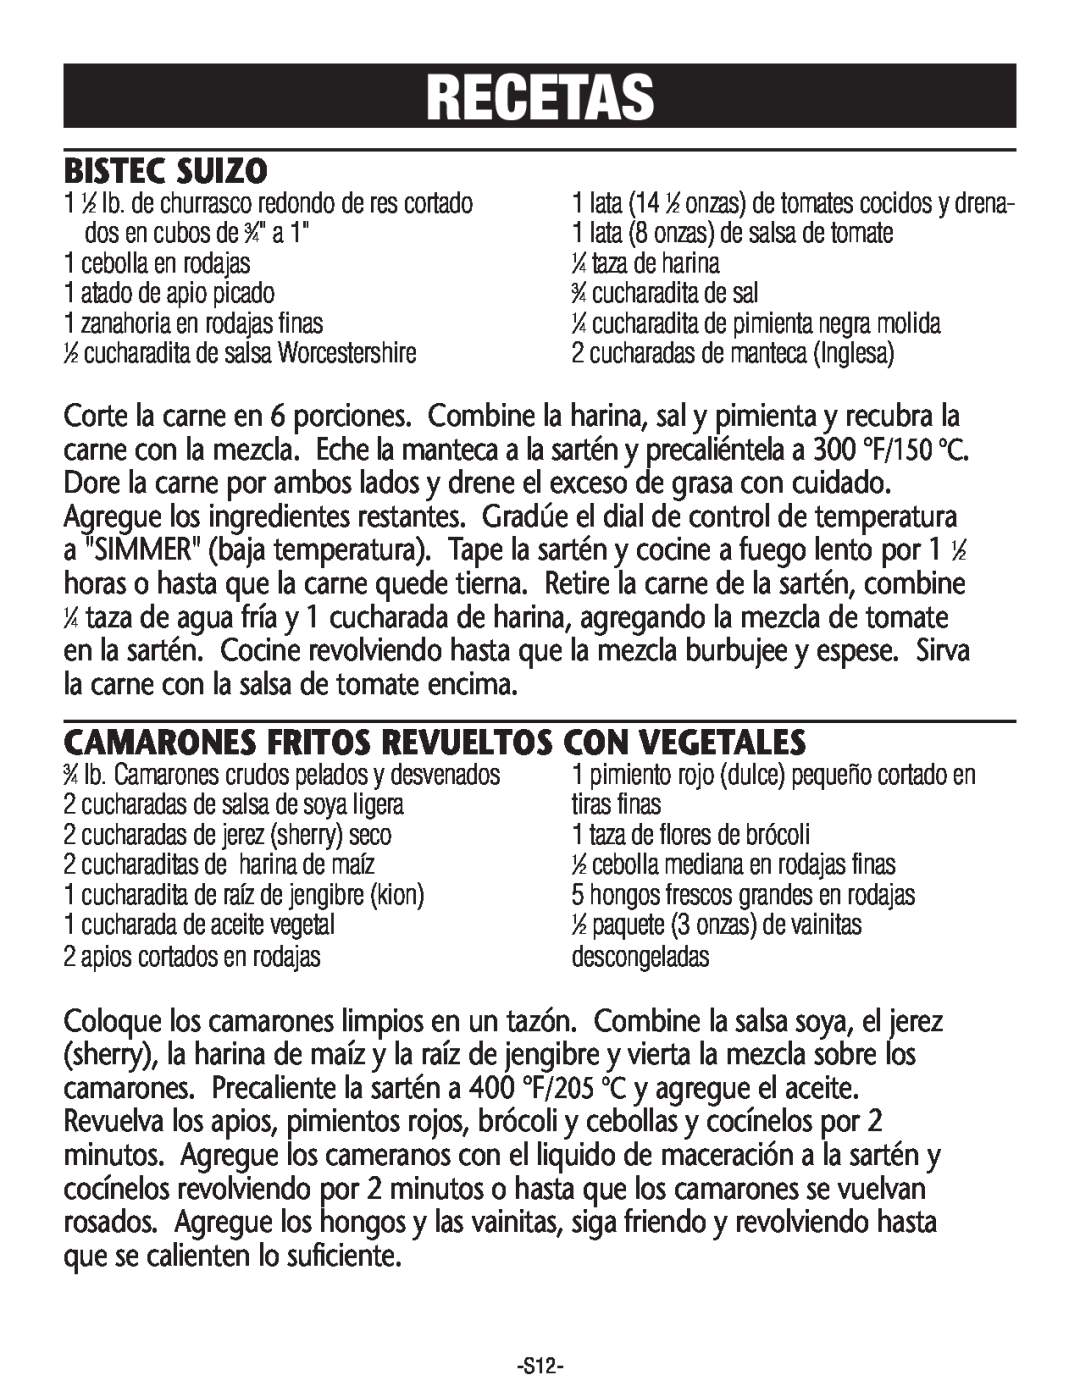 Rival S160 manual Recetas, Bistec Suizo, Camarones Fritos Revueltos Con Vegetales 